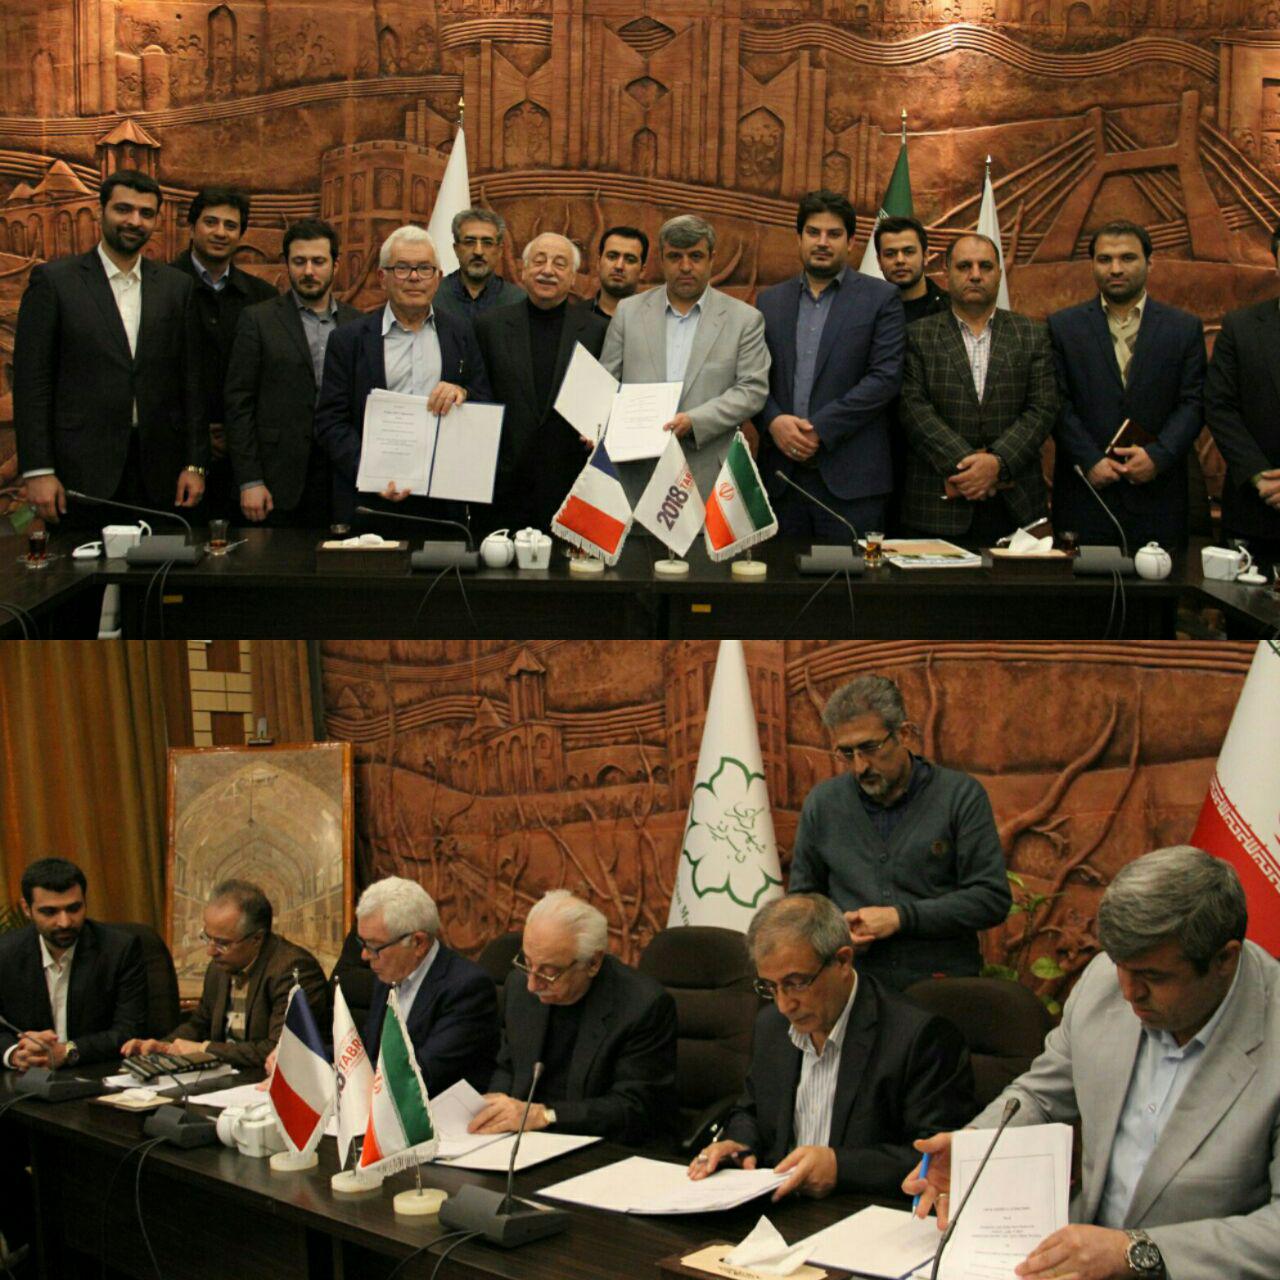  با حضور رئیس شورای شهر ، شهردار تبریز و سرمایه گذاران فرانسوی اصول قرارداد احداث واحد تولید انرژی از زباله امضا شد